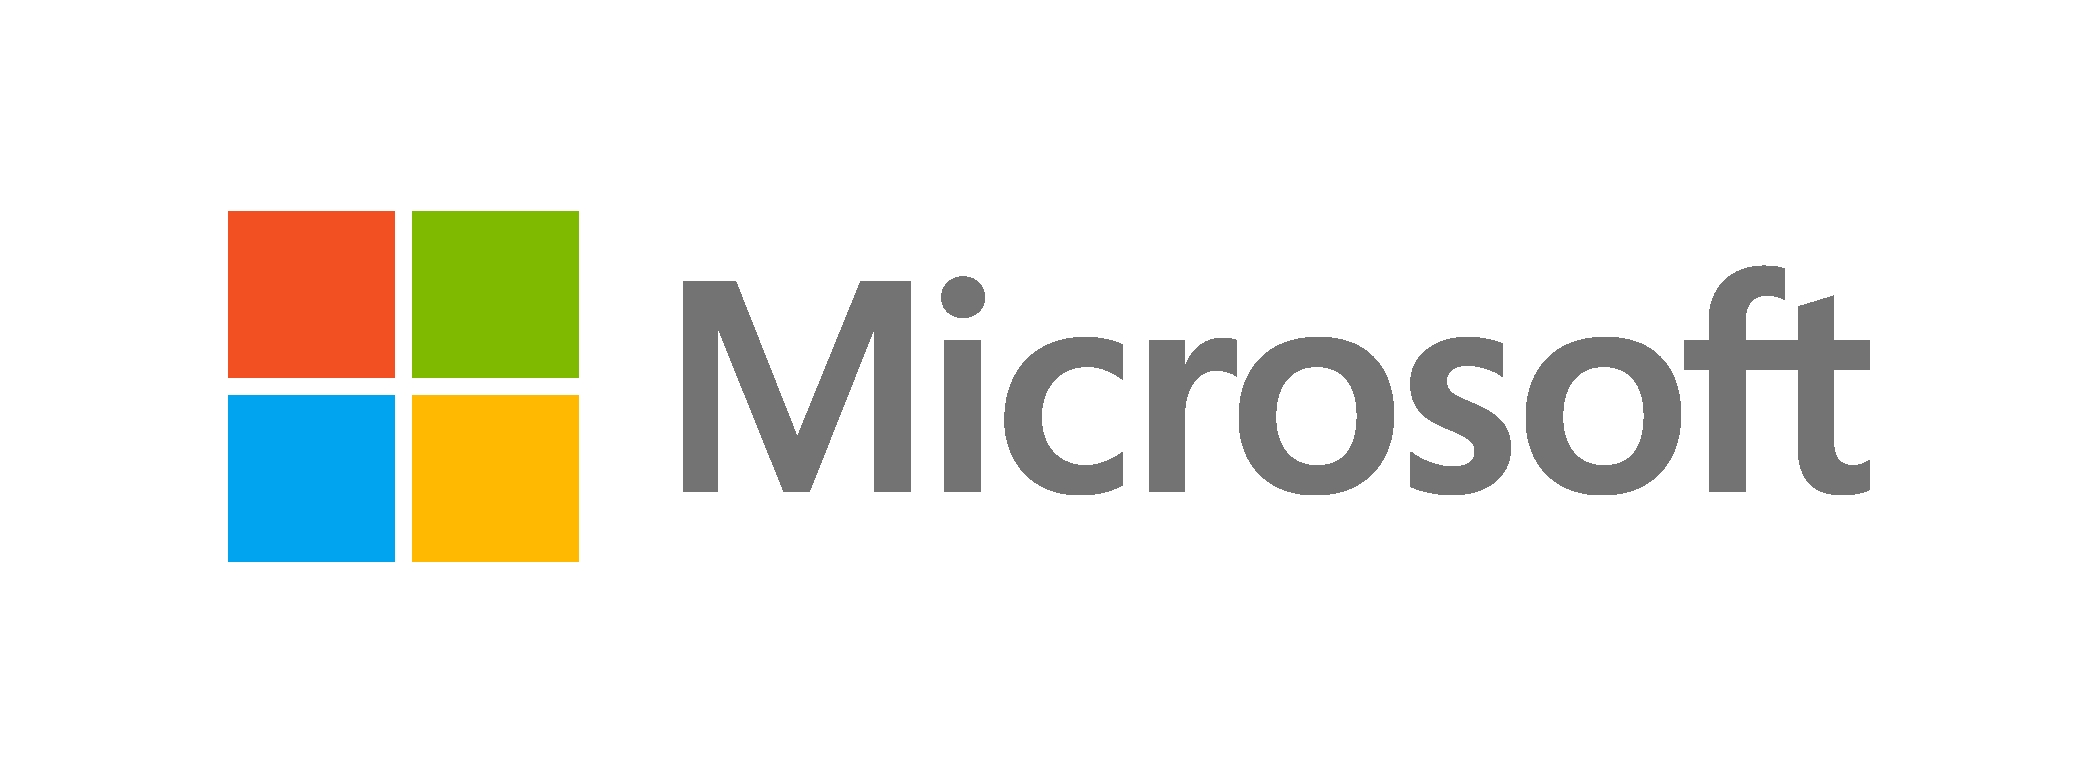 Microsoft Corp. (Detroit) logo